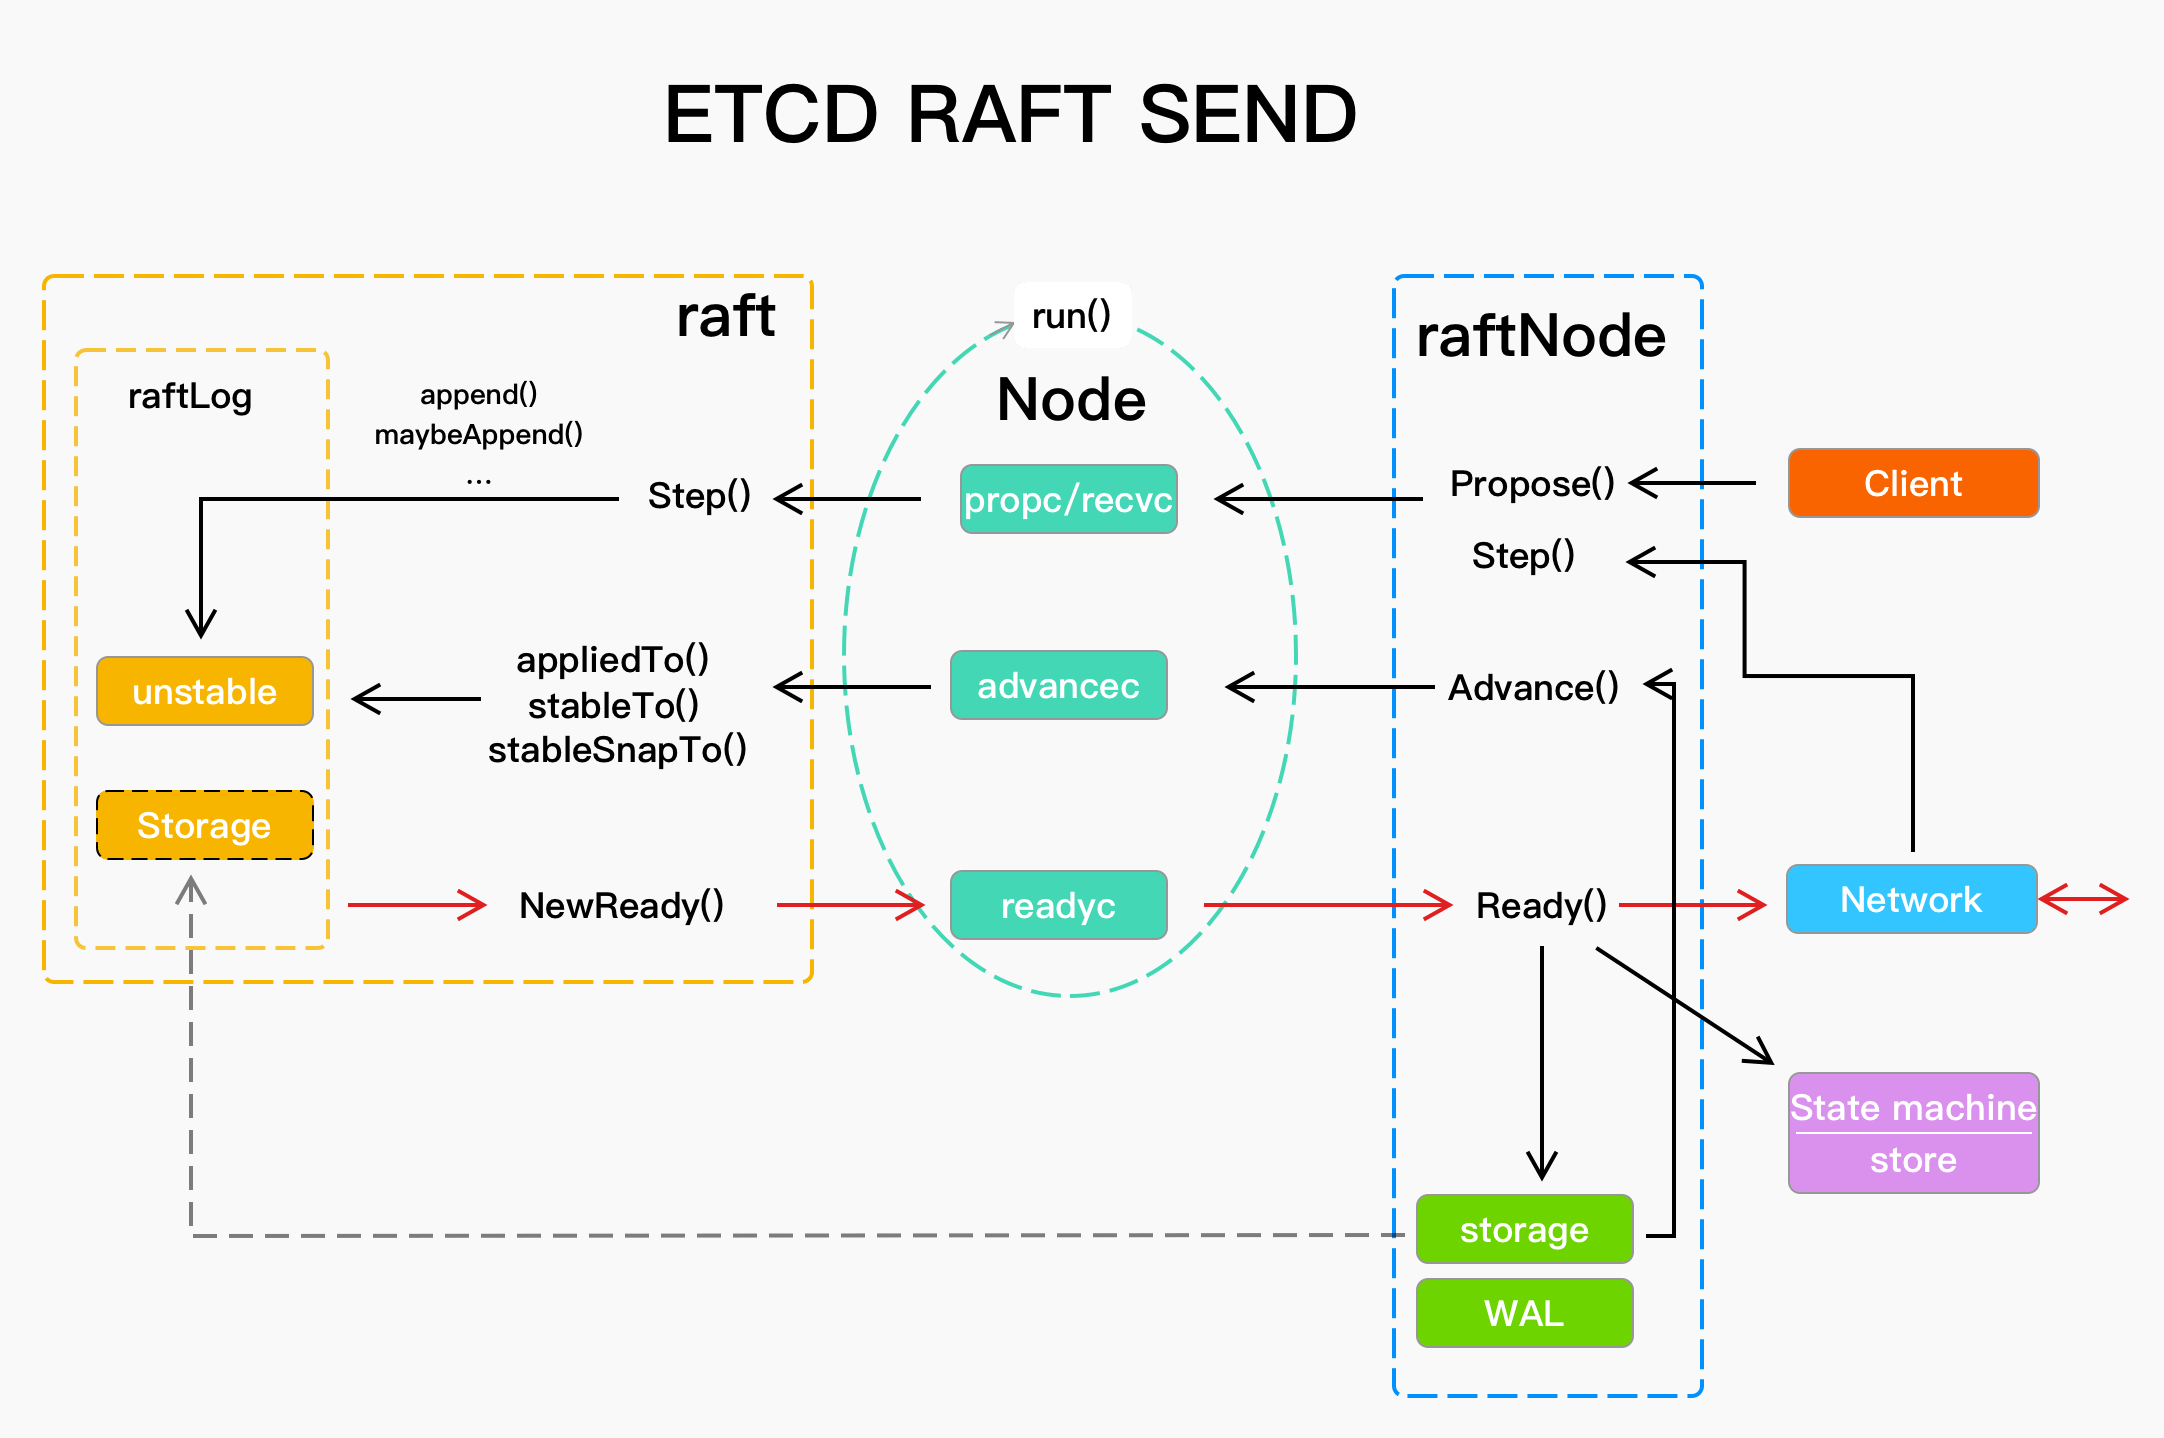 etcd raft send message flow